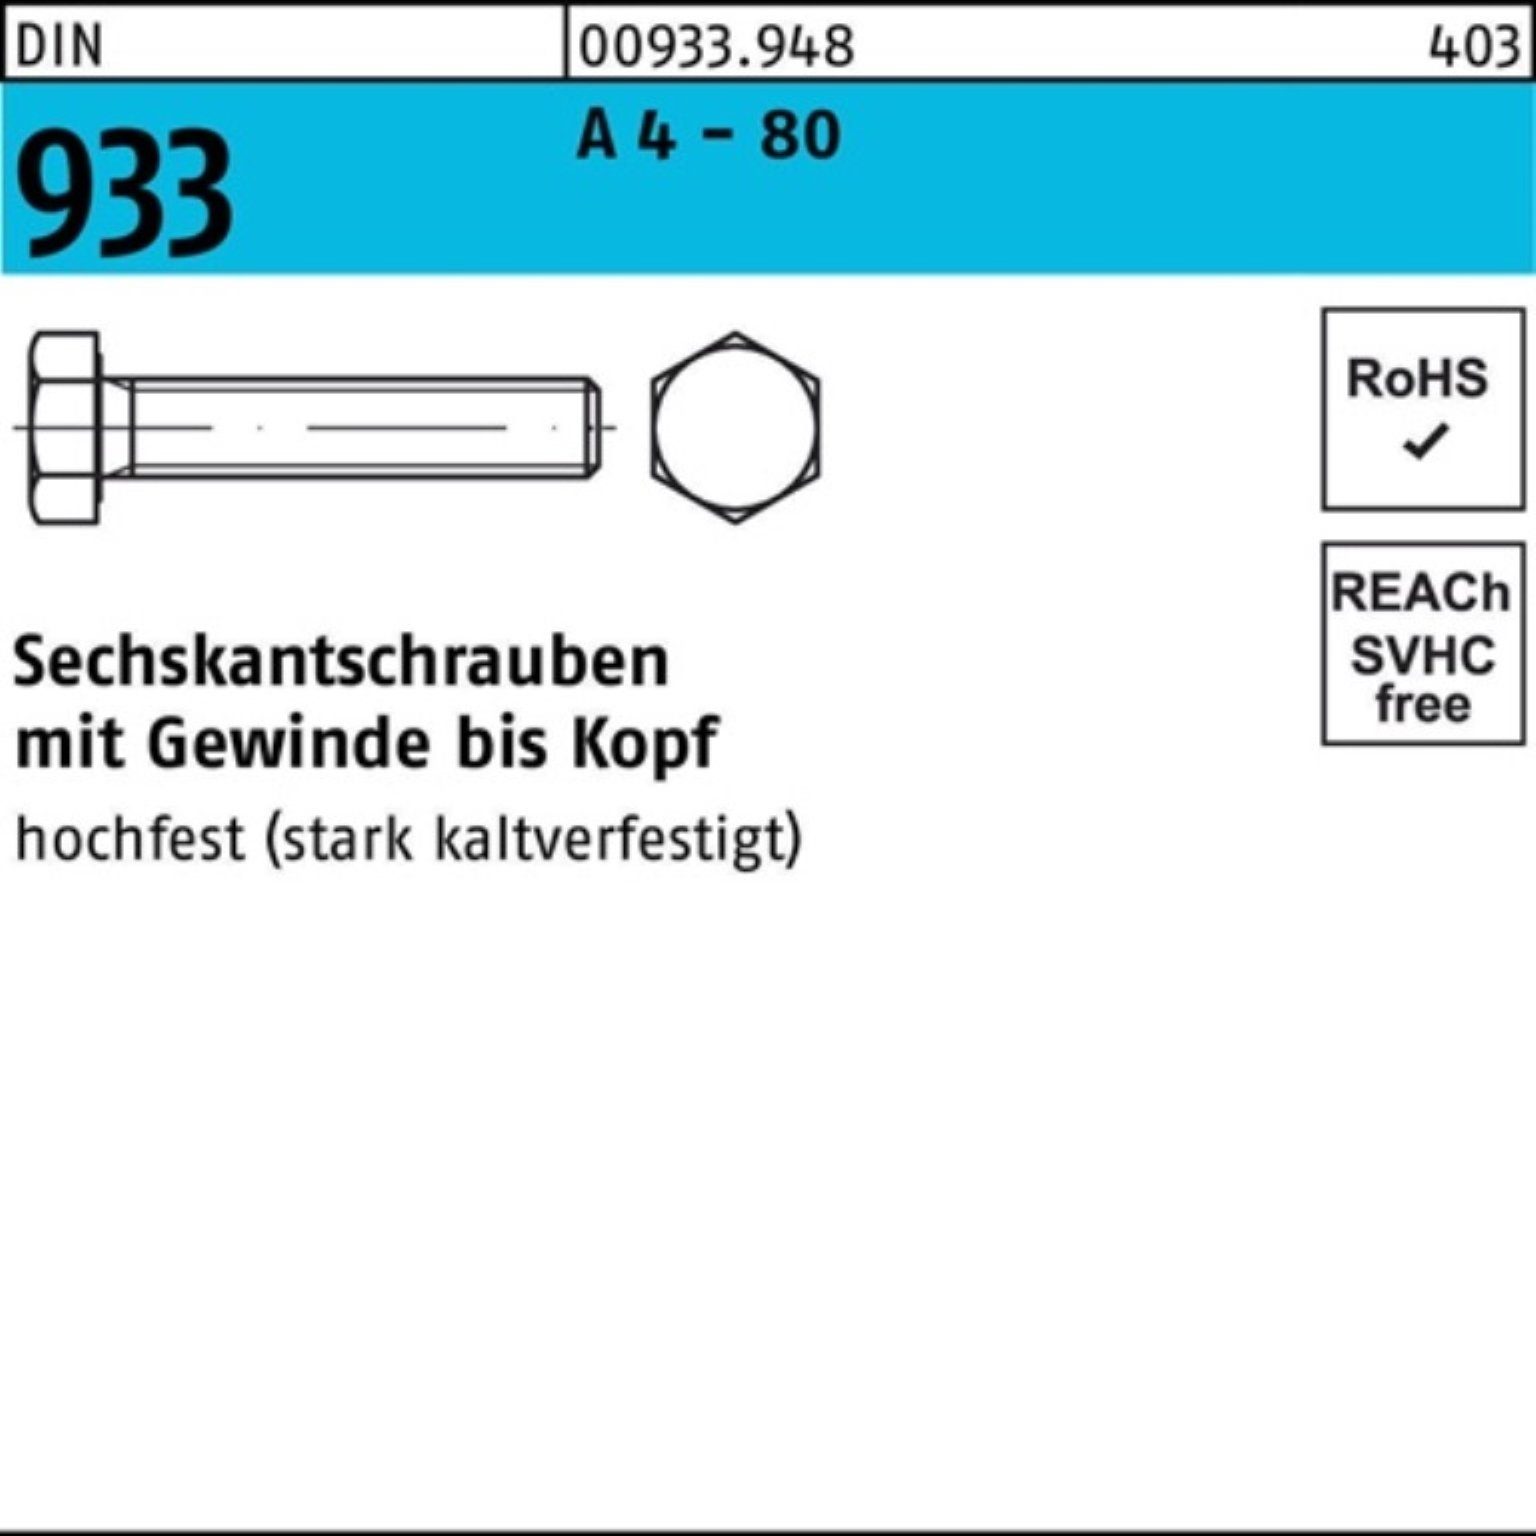 Reyher Sechskantschraube 100er Pack Sechskantschraube DIN 933 VG M12x 40 A 4 - 80 100 Stück DI